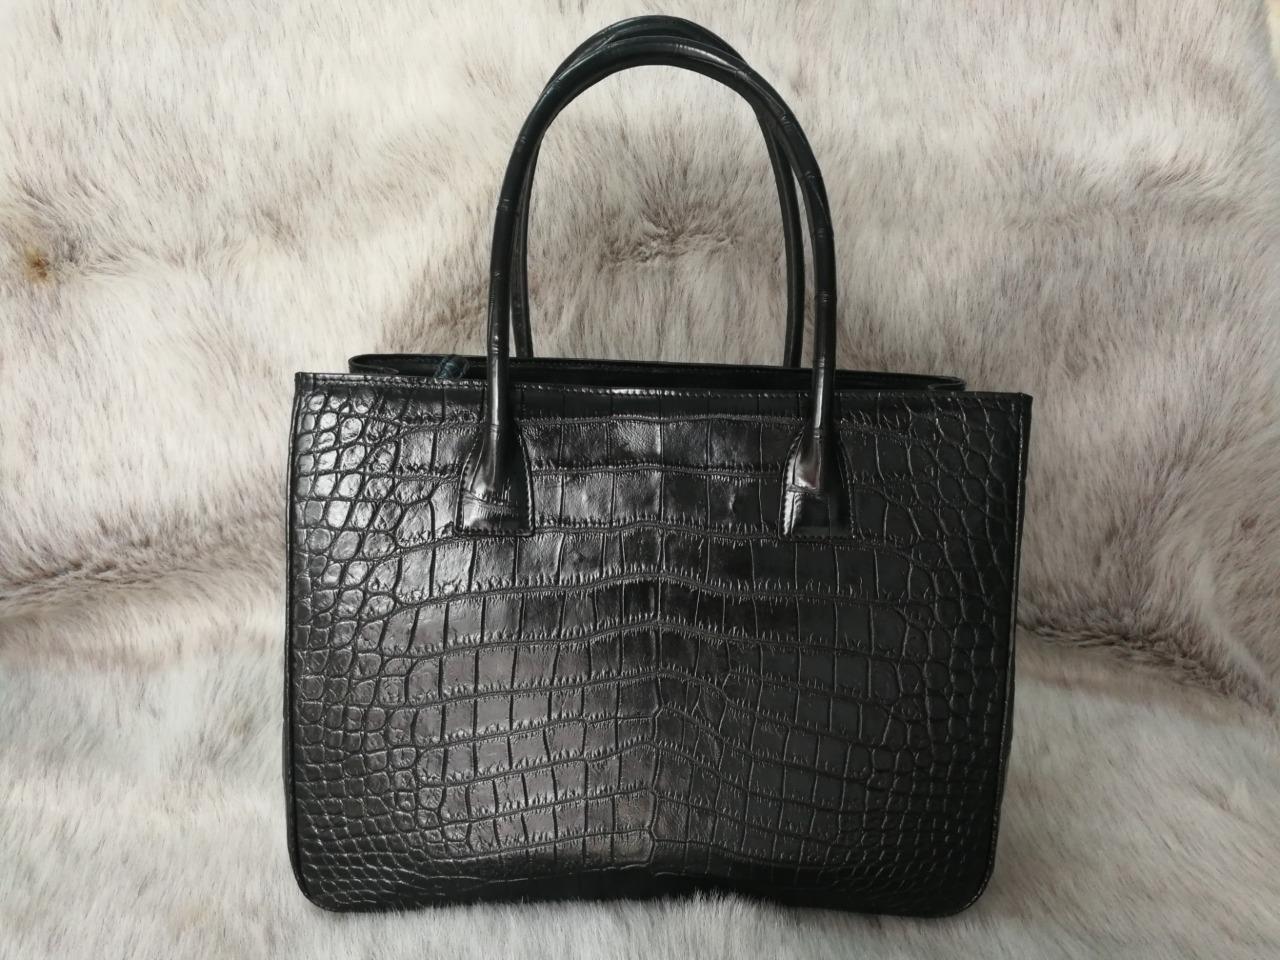 croc leather purse